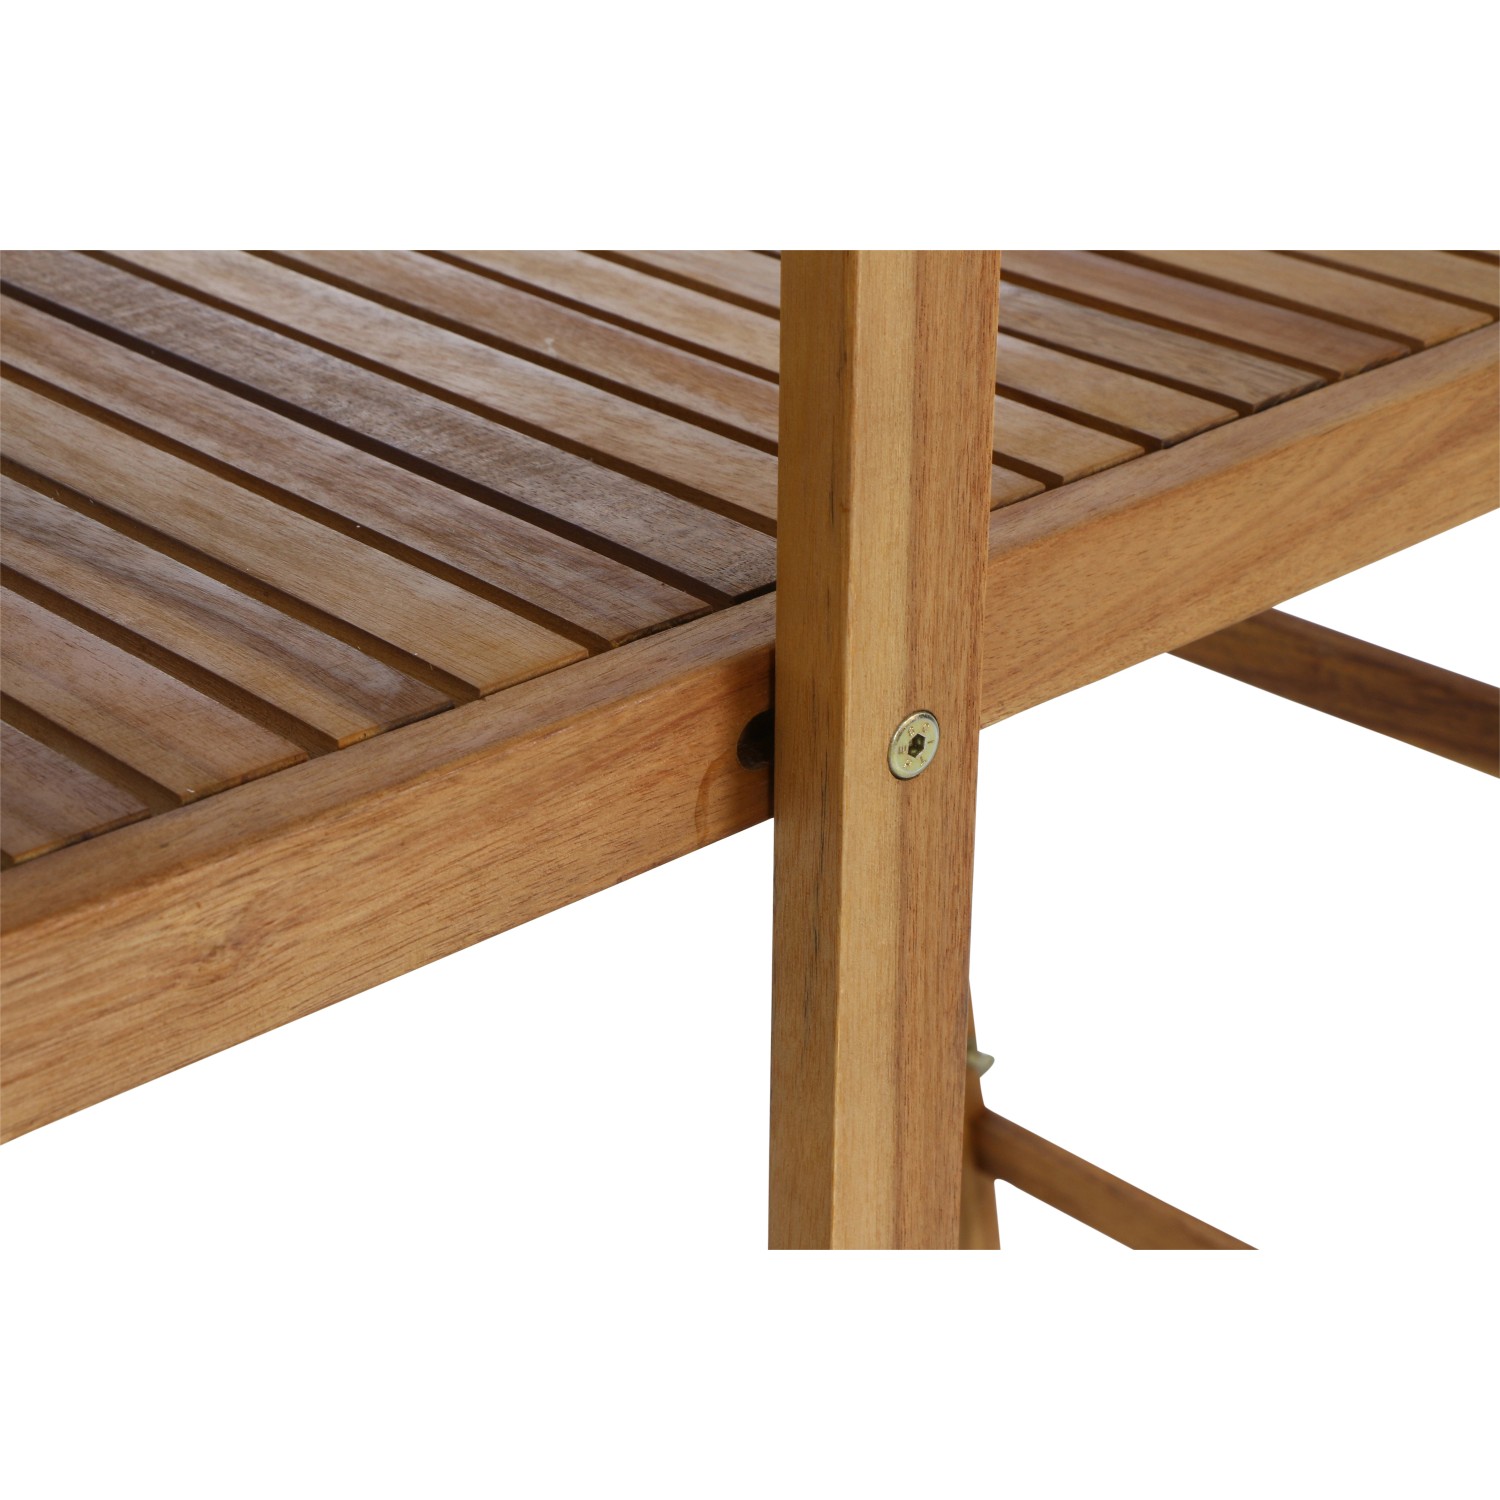 Siena Garden Balkonmöbel-Set bei Natur FSC® Bari 3-tlg. Akazie OBI kaufen